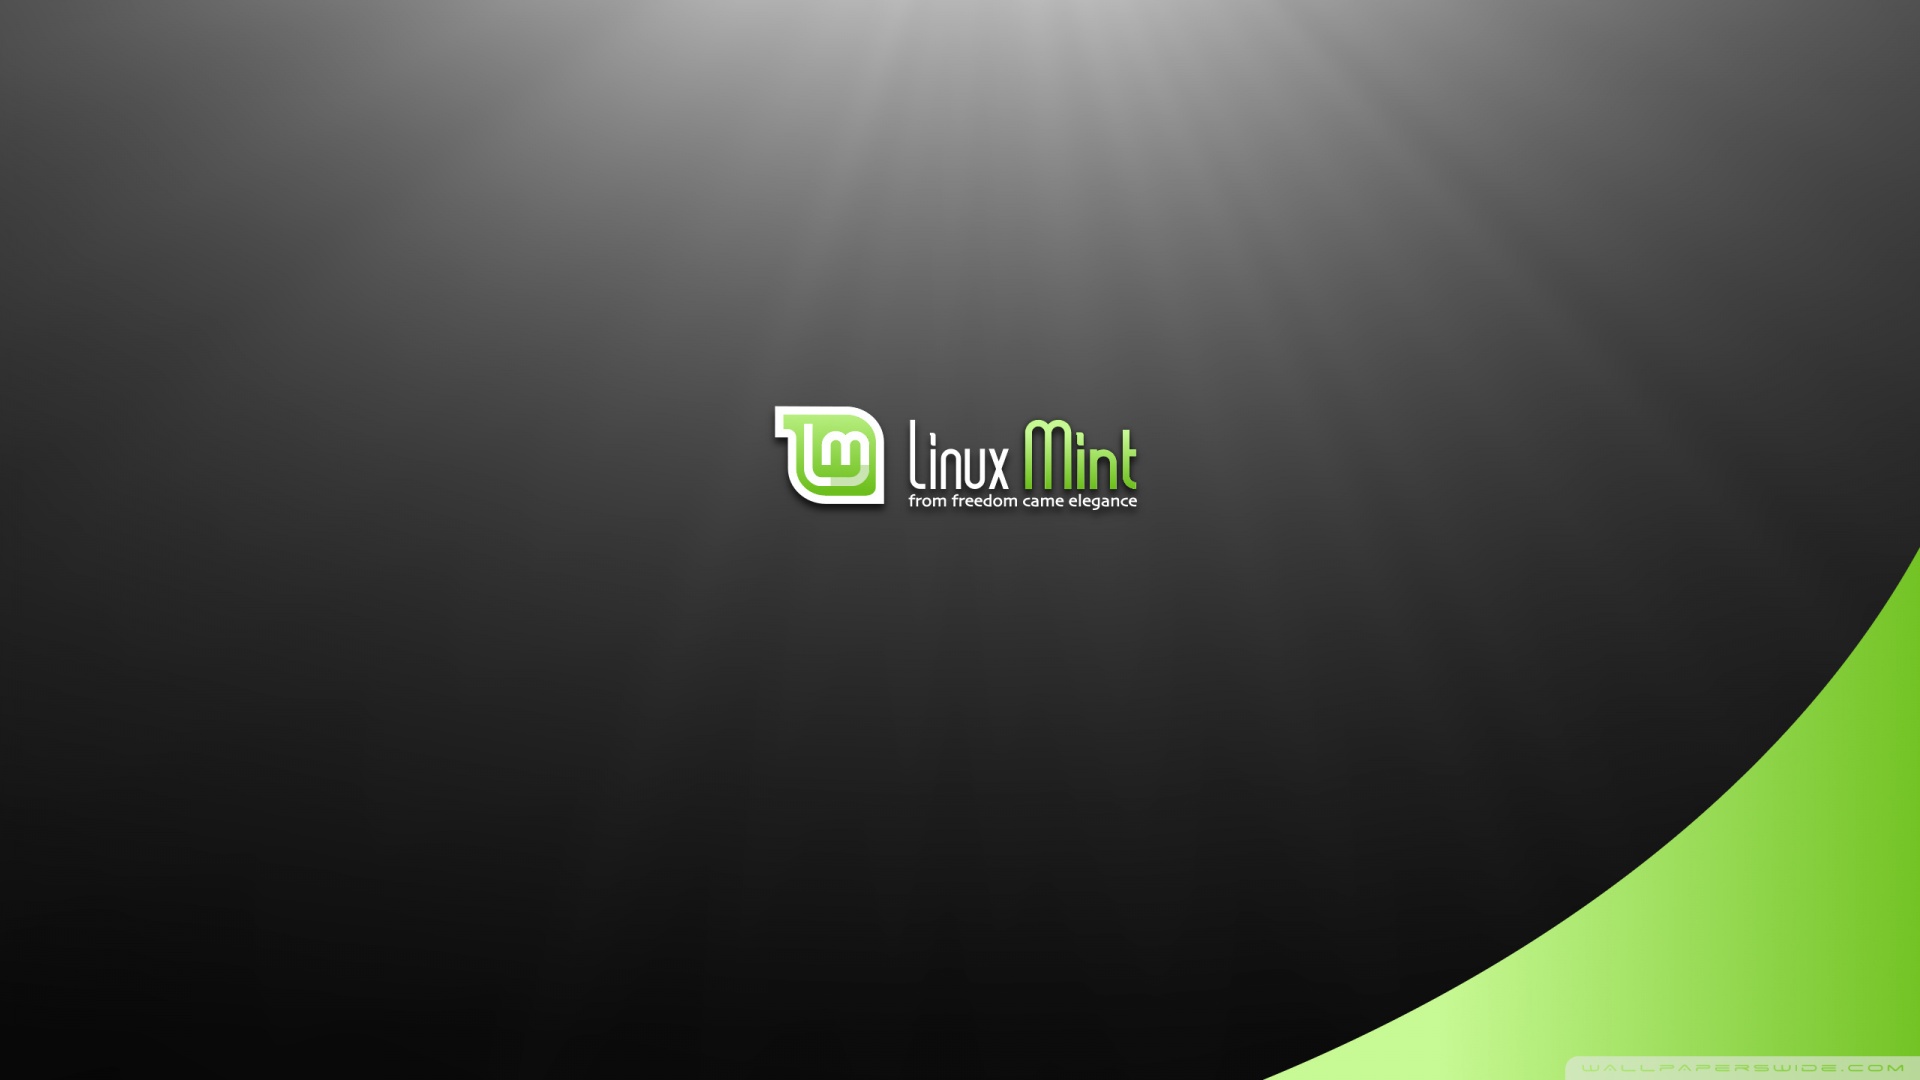 Bộ sưu tập hình nền Linux Mint rất đa dạng và chất lượng rất tốt. Bạn có thể tìm thấy nhiều kiểu dáng khác nhau để lựa chọn, có thể trở thành sự lựa chọn hoàn hảo cho người dùng công nghệ.